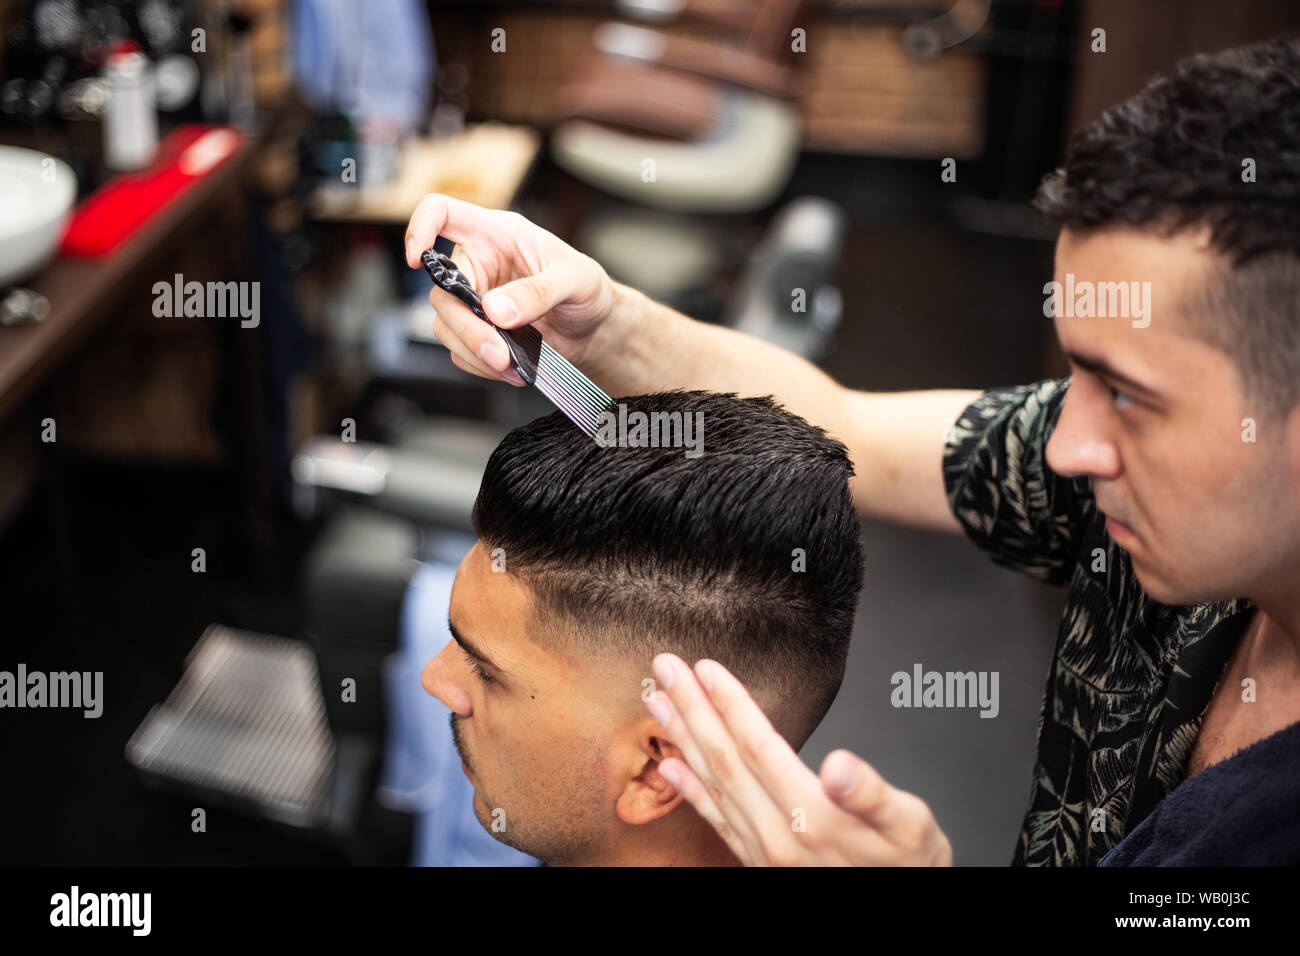 Peluquería Para Hombres. Hombre Barbero Haciendo Peinado En Barbería.  Cliente Masculino Guapo Y Peluquero. Alta Resolución Fotos, retratos,  imágenes y fotografía de archivo libres de derecho. Image 105263588